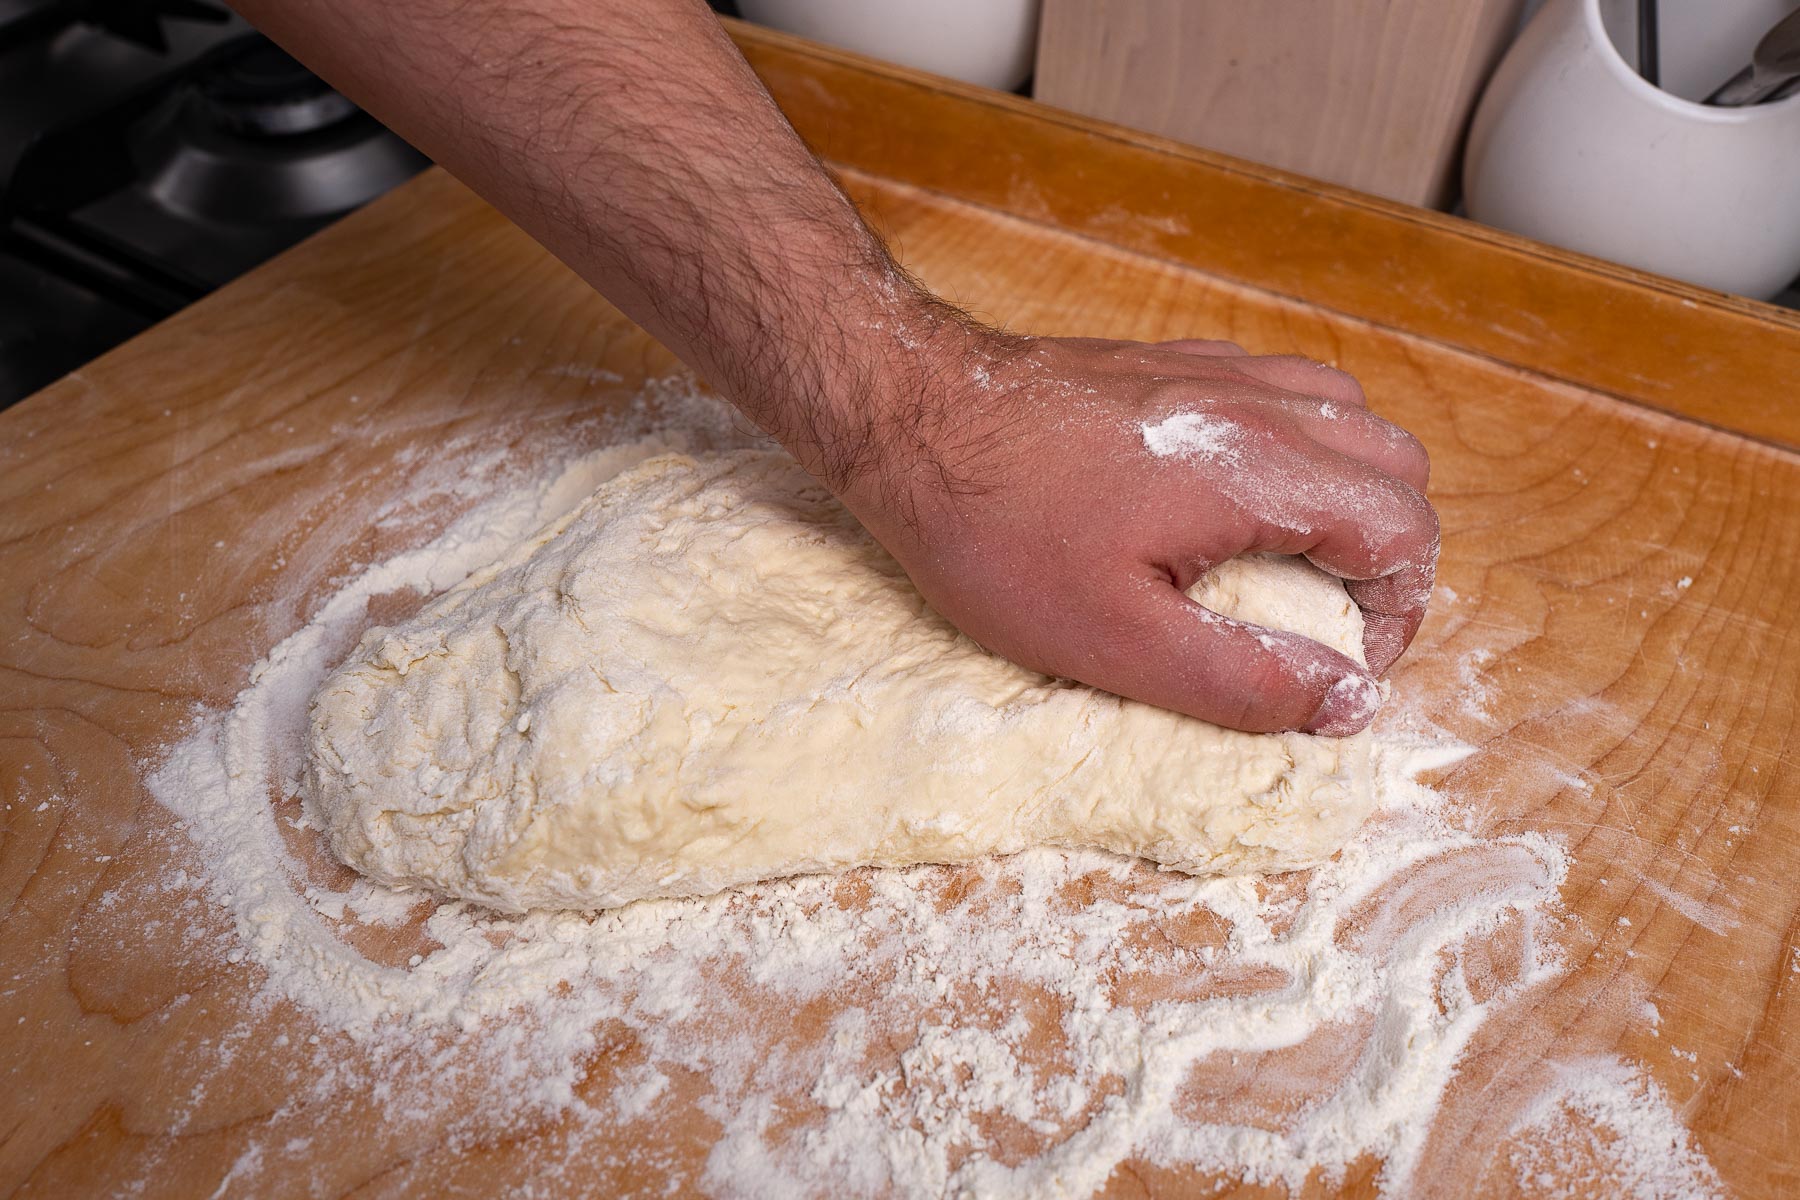 resztka mąki i ciasto wyjęte dokładnie z miski należy zacząć wyrabiać na blacie